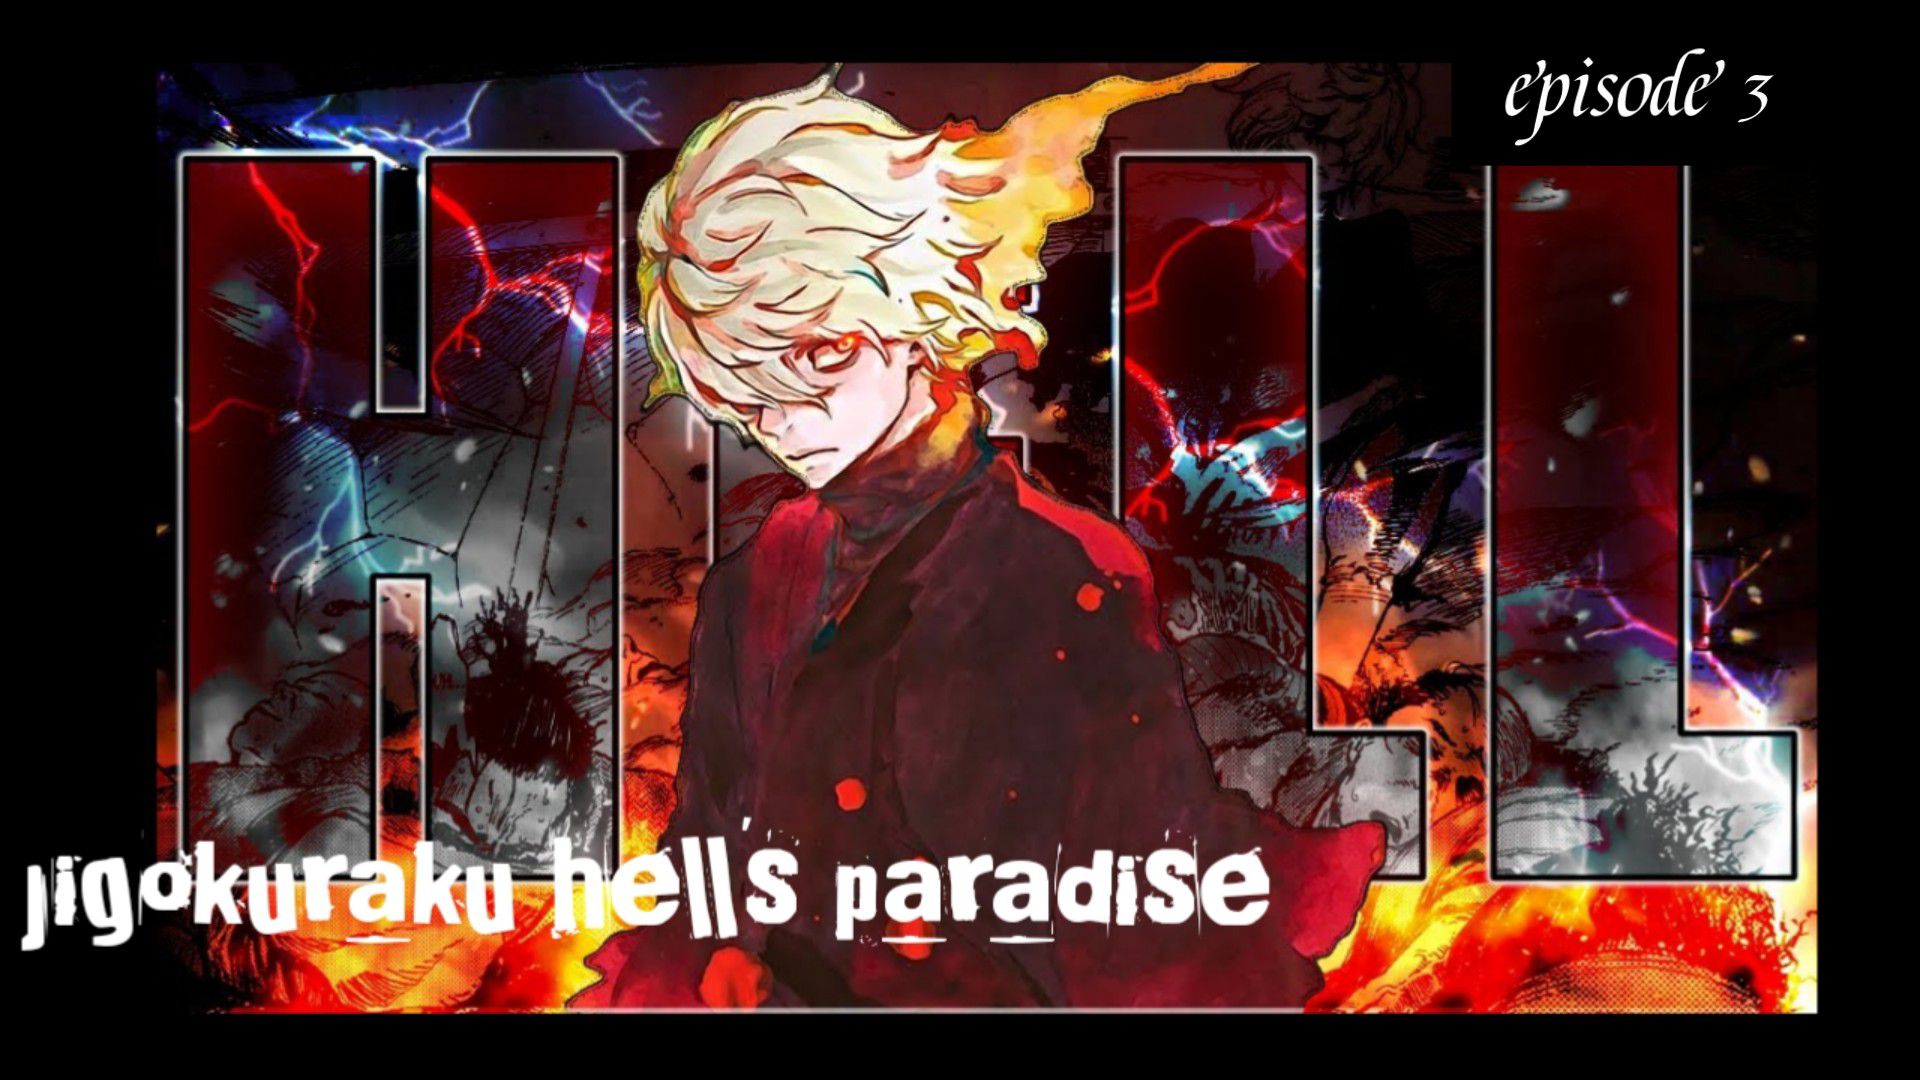 Hells paradise jigokuraku episode 3 - BiliBili